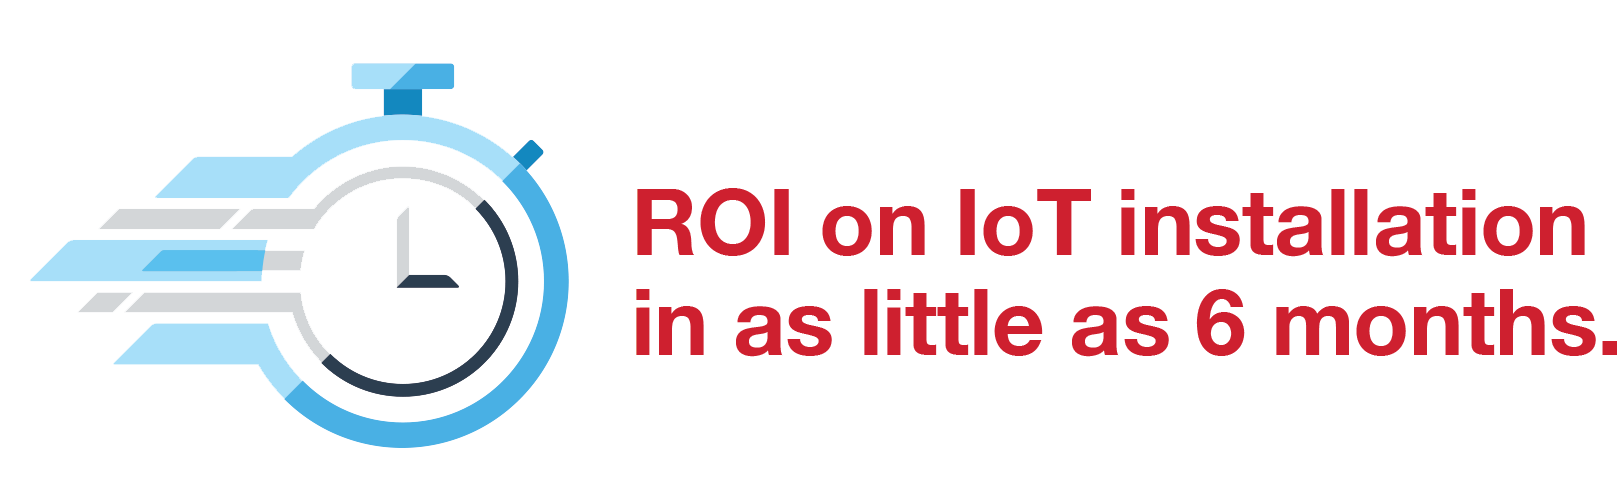 ROI on IoT